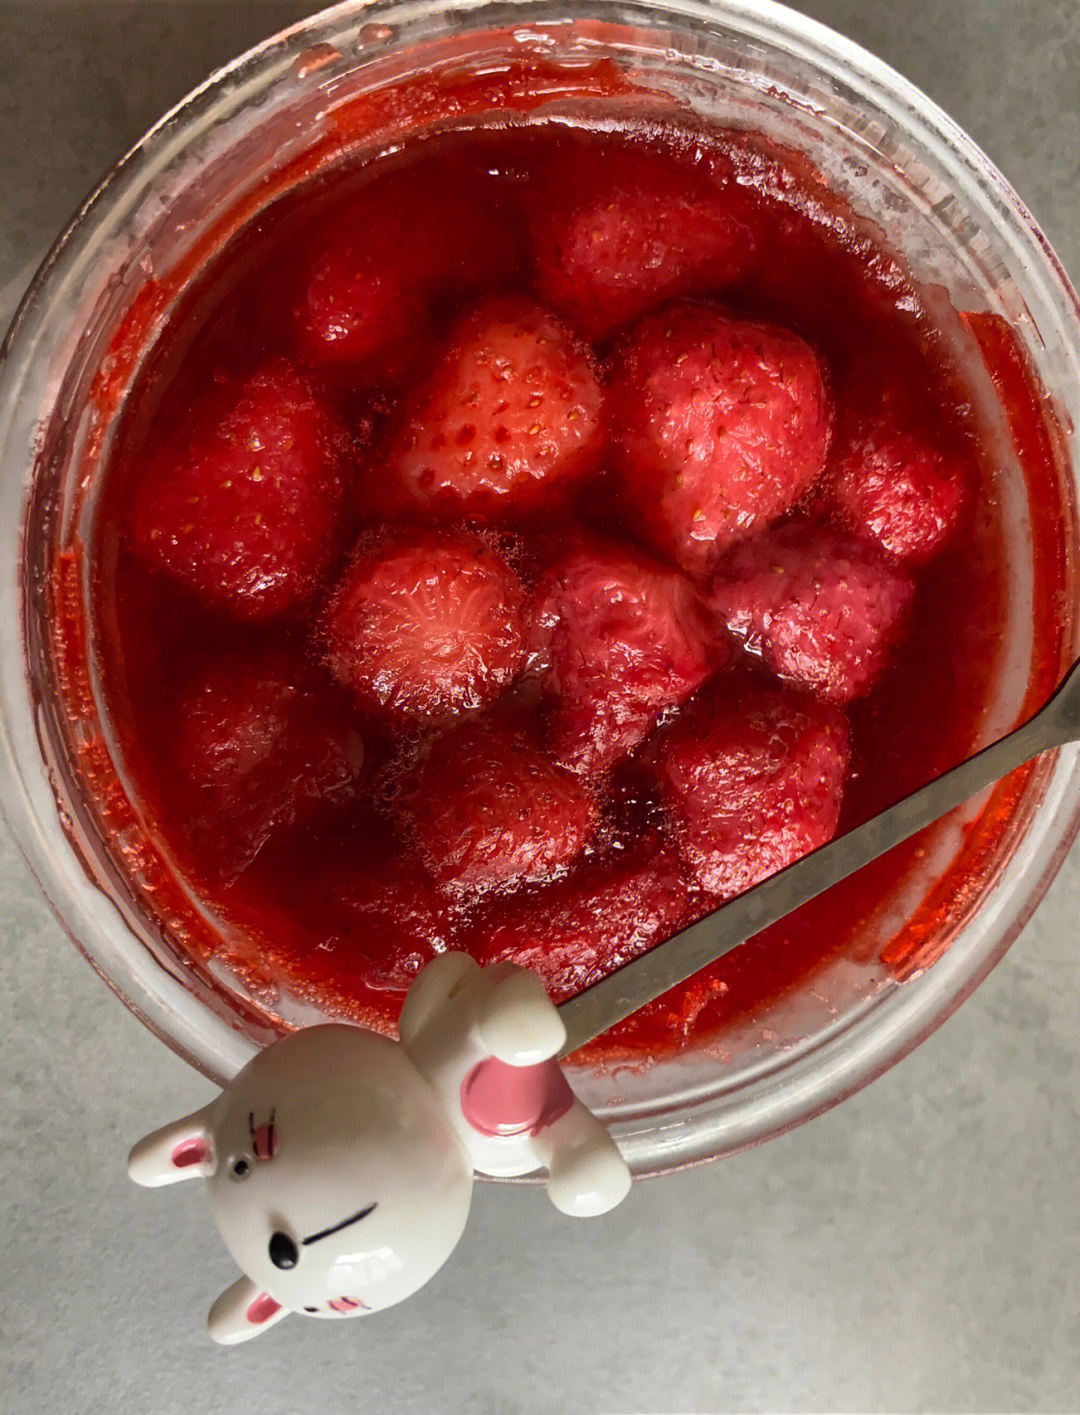 冰点草莓做法图片